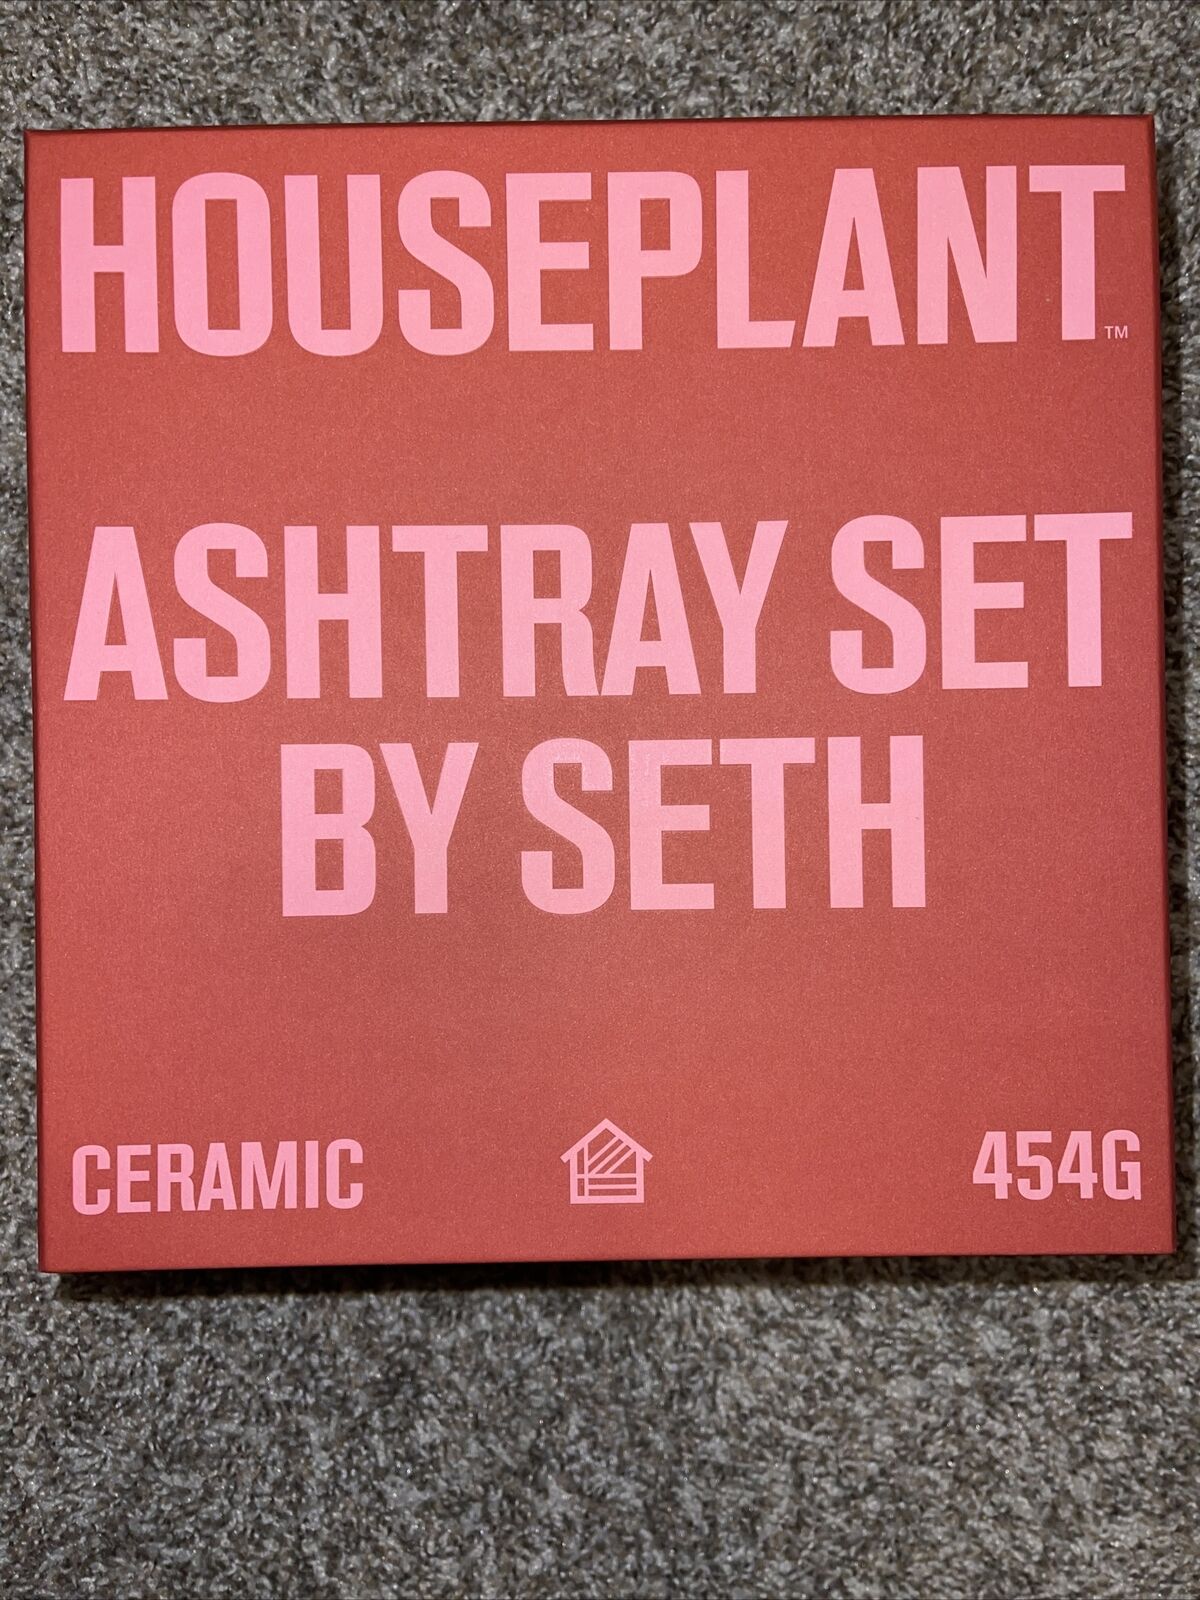 Houseplant by Seth Rogen Ceramic Ashtray Set Sand New In Box